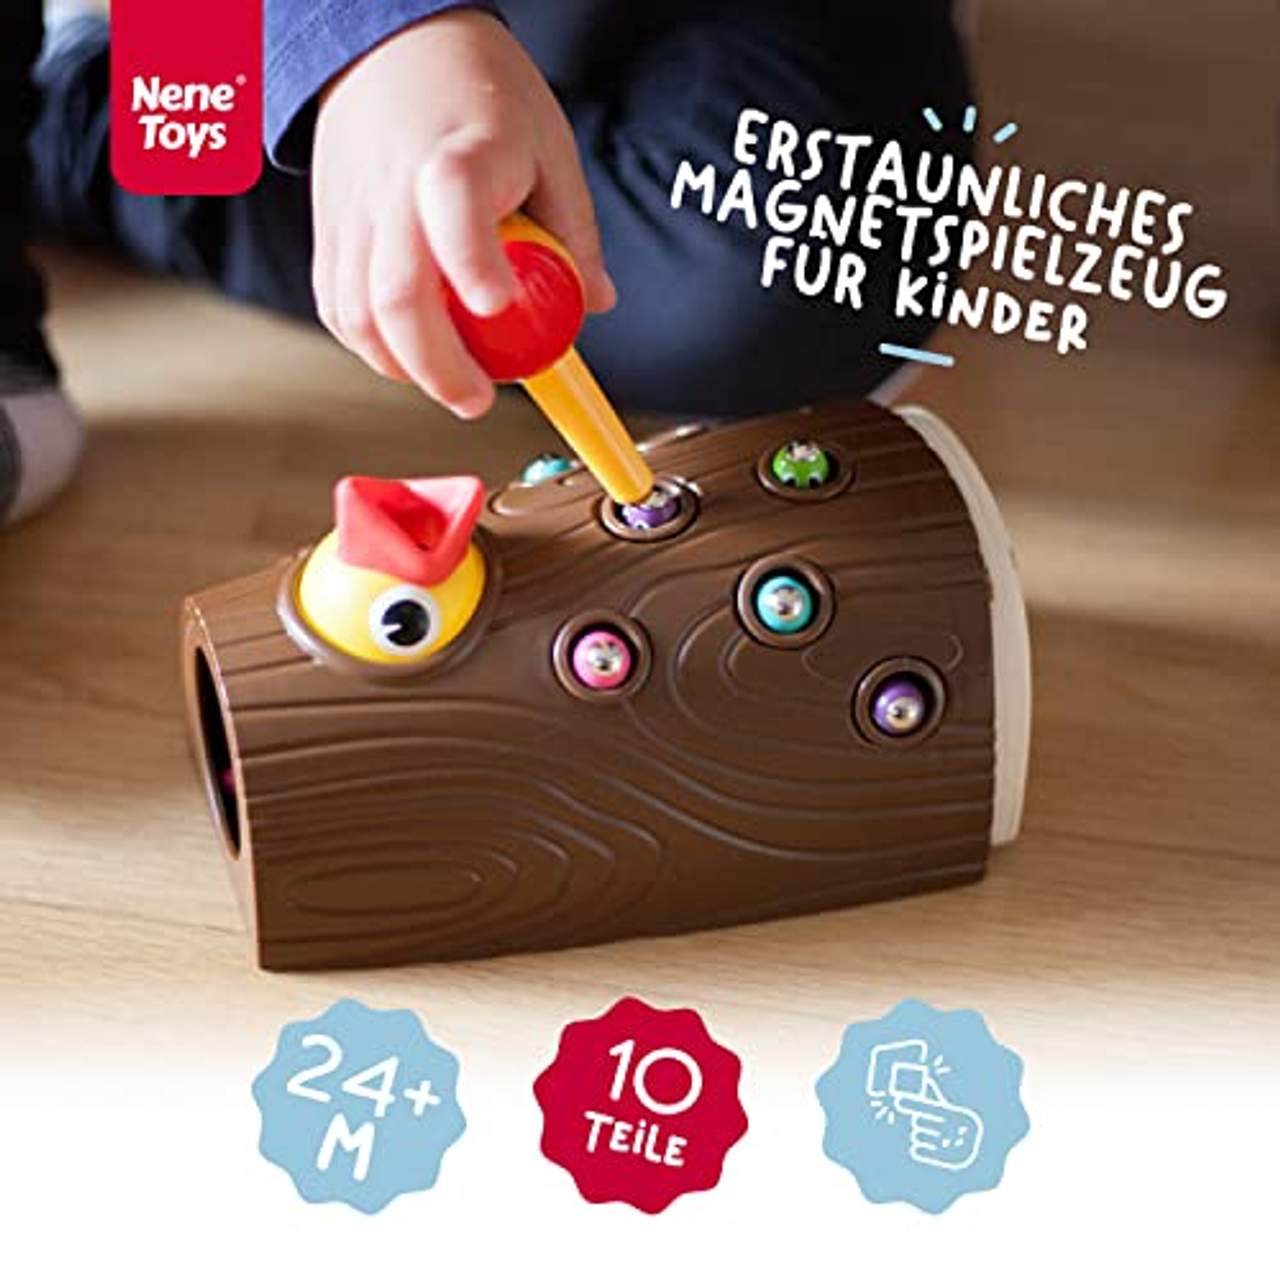 Nene Toys Lernspielzeug für Jungen und Mädchen 2 3 4 Jahre Alt